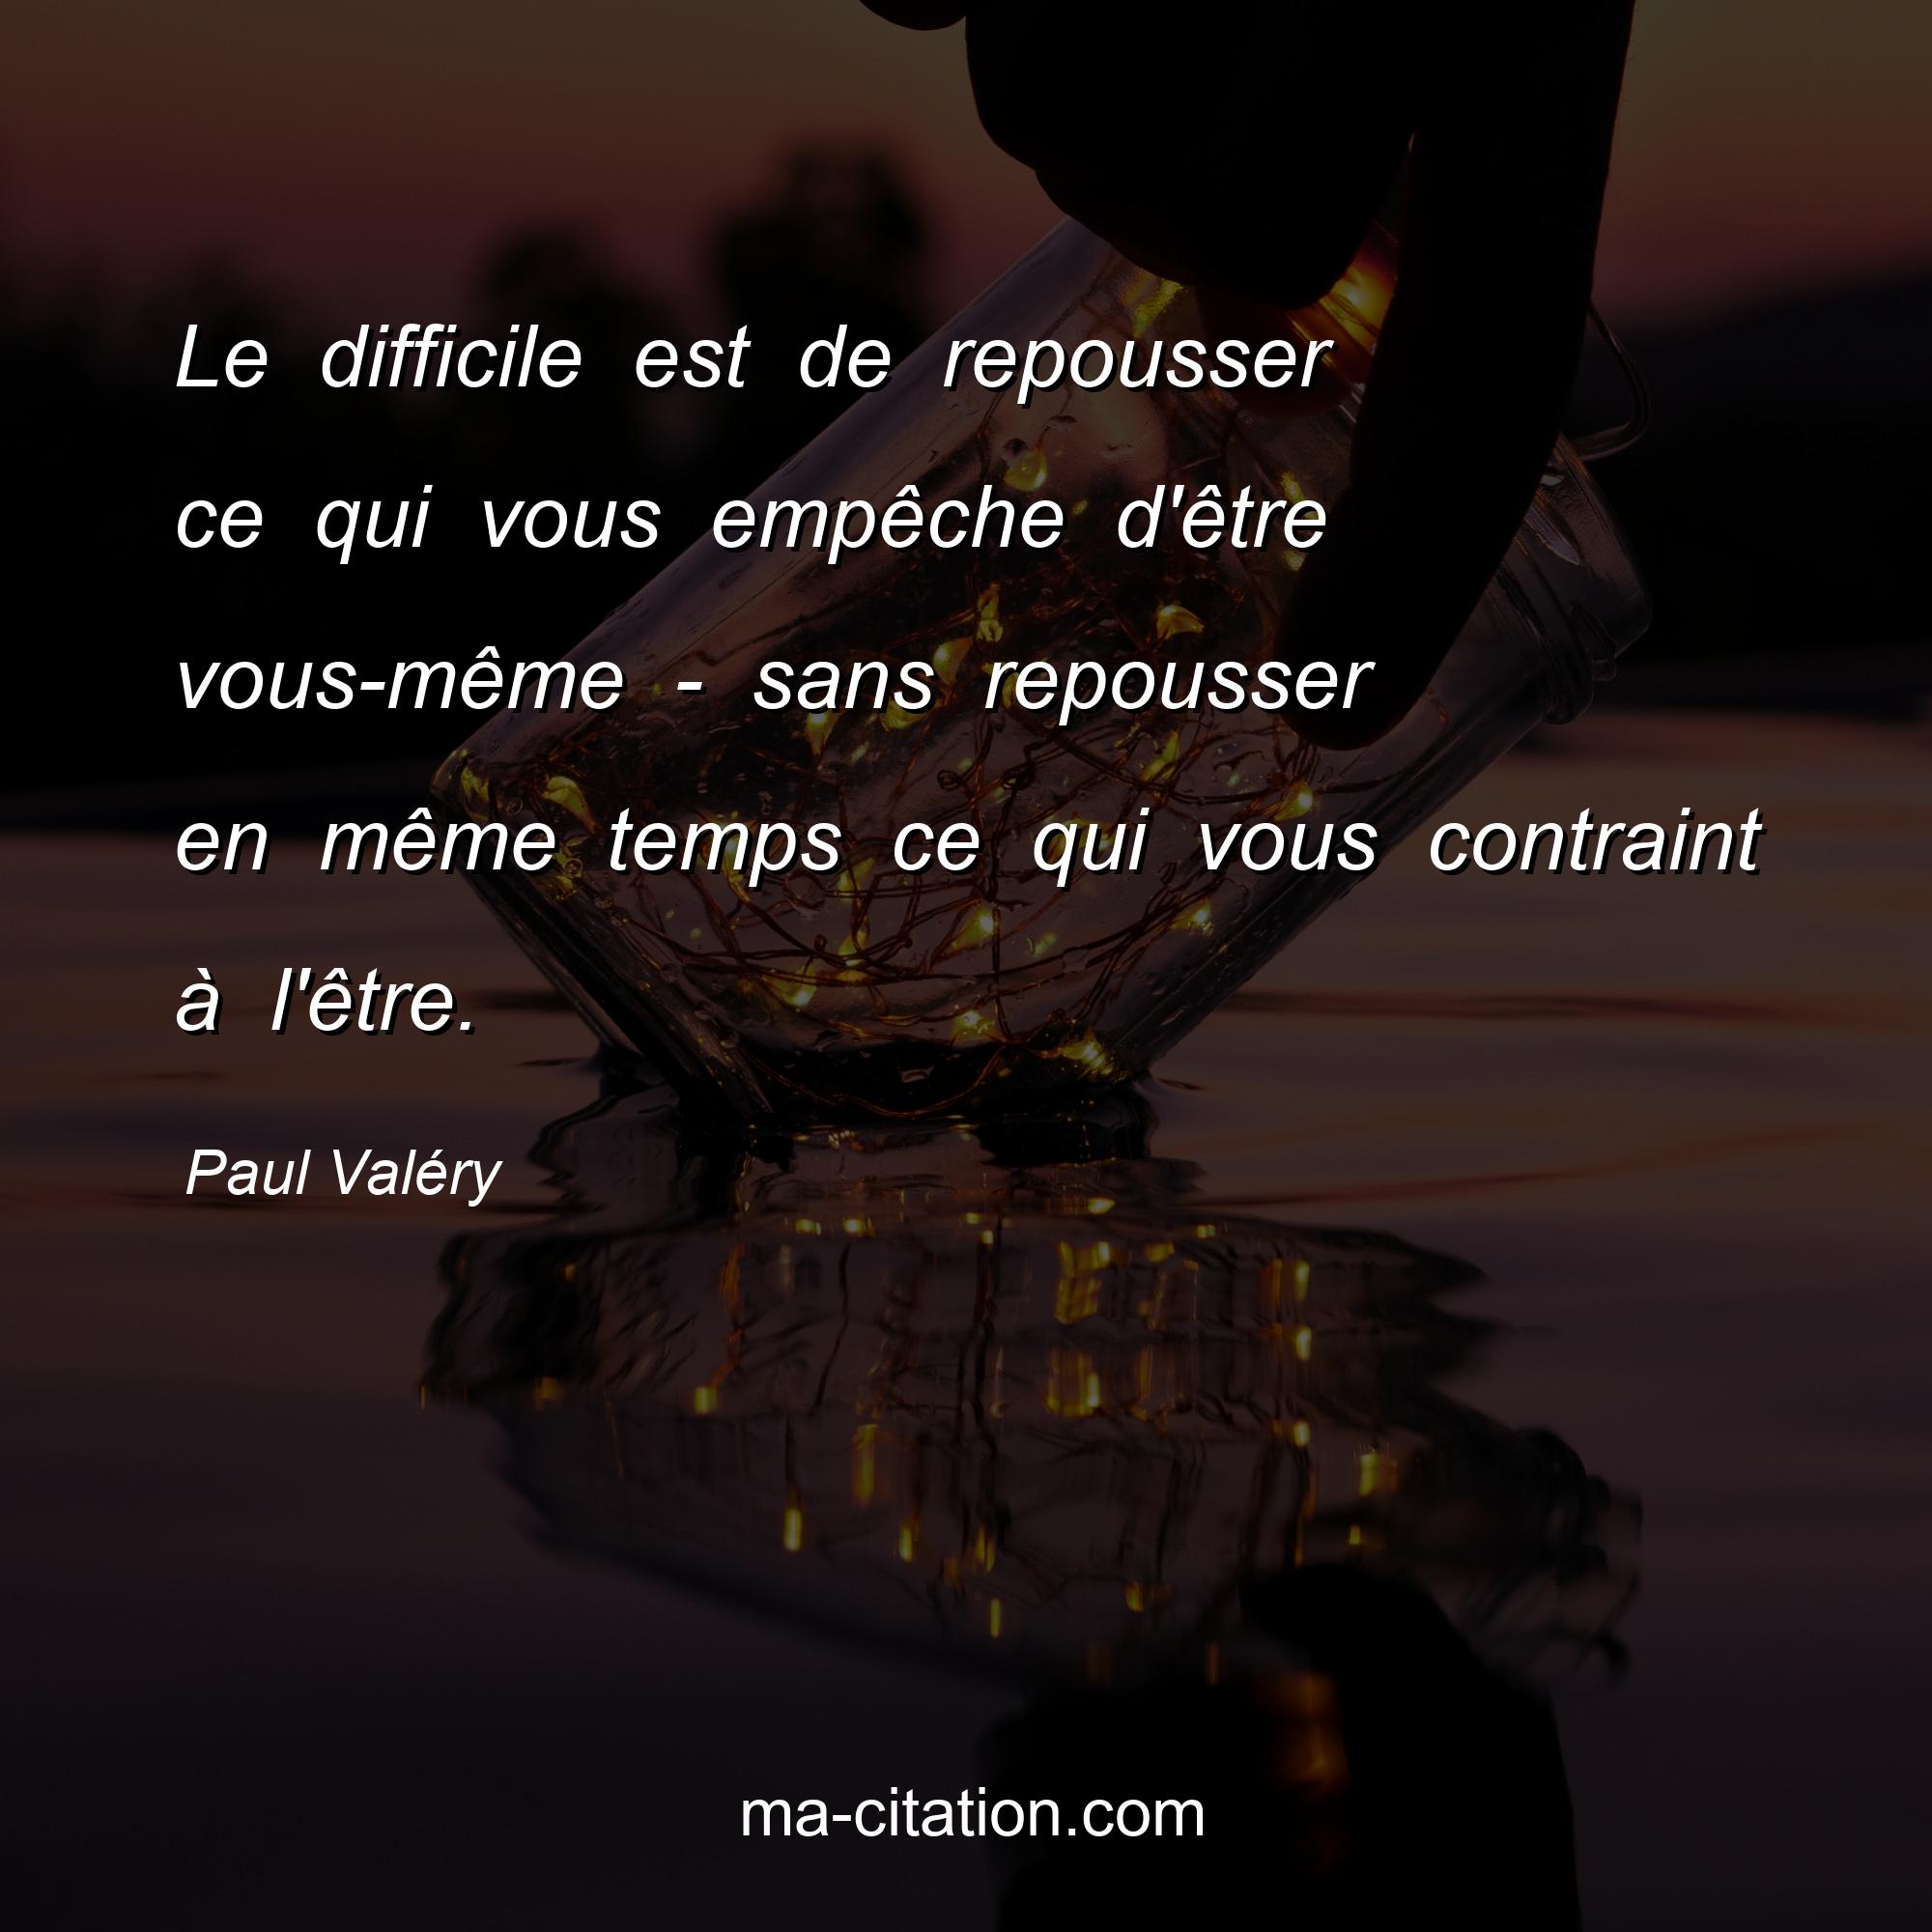 Paul Valéry : Le difficile est de repousser ce qui vous empêche d'être vous-même - sans repousser en même temps ce qui vous contraint à l'être.